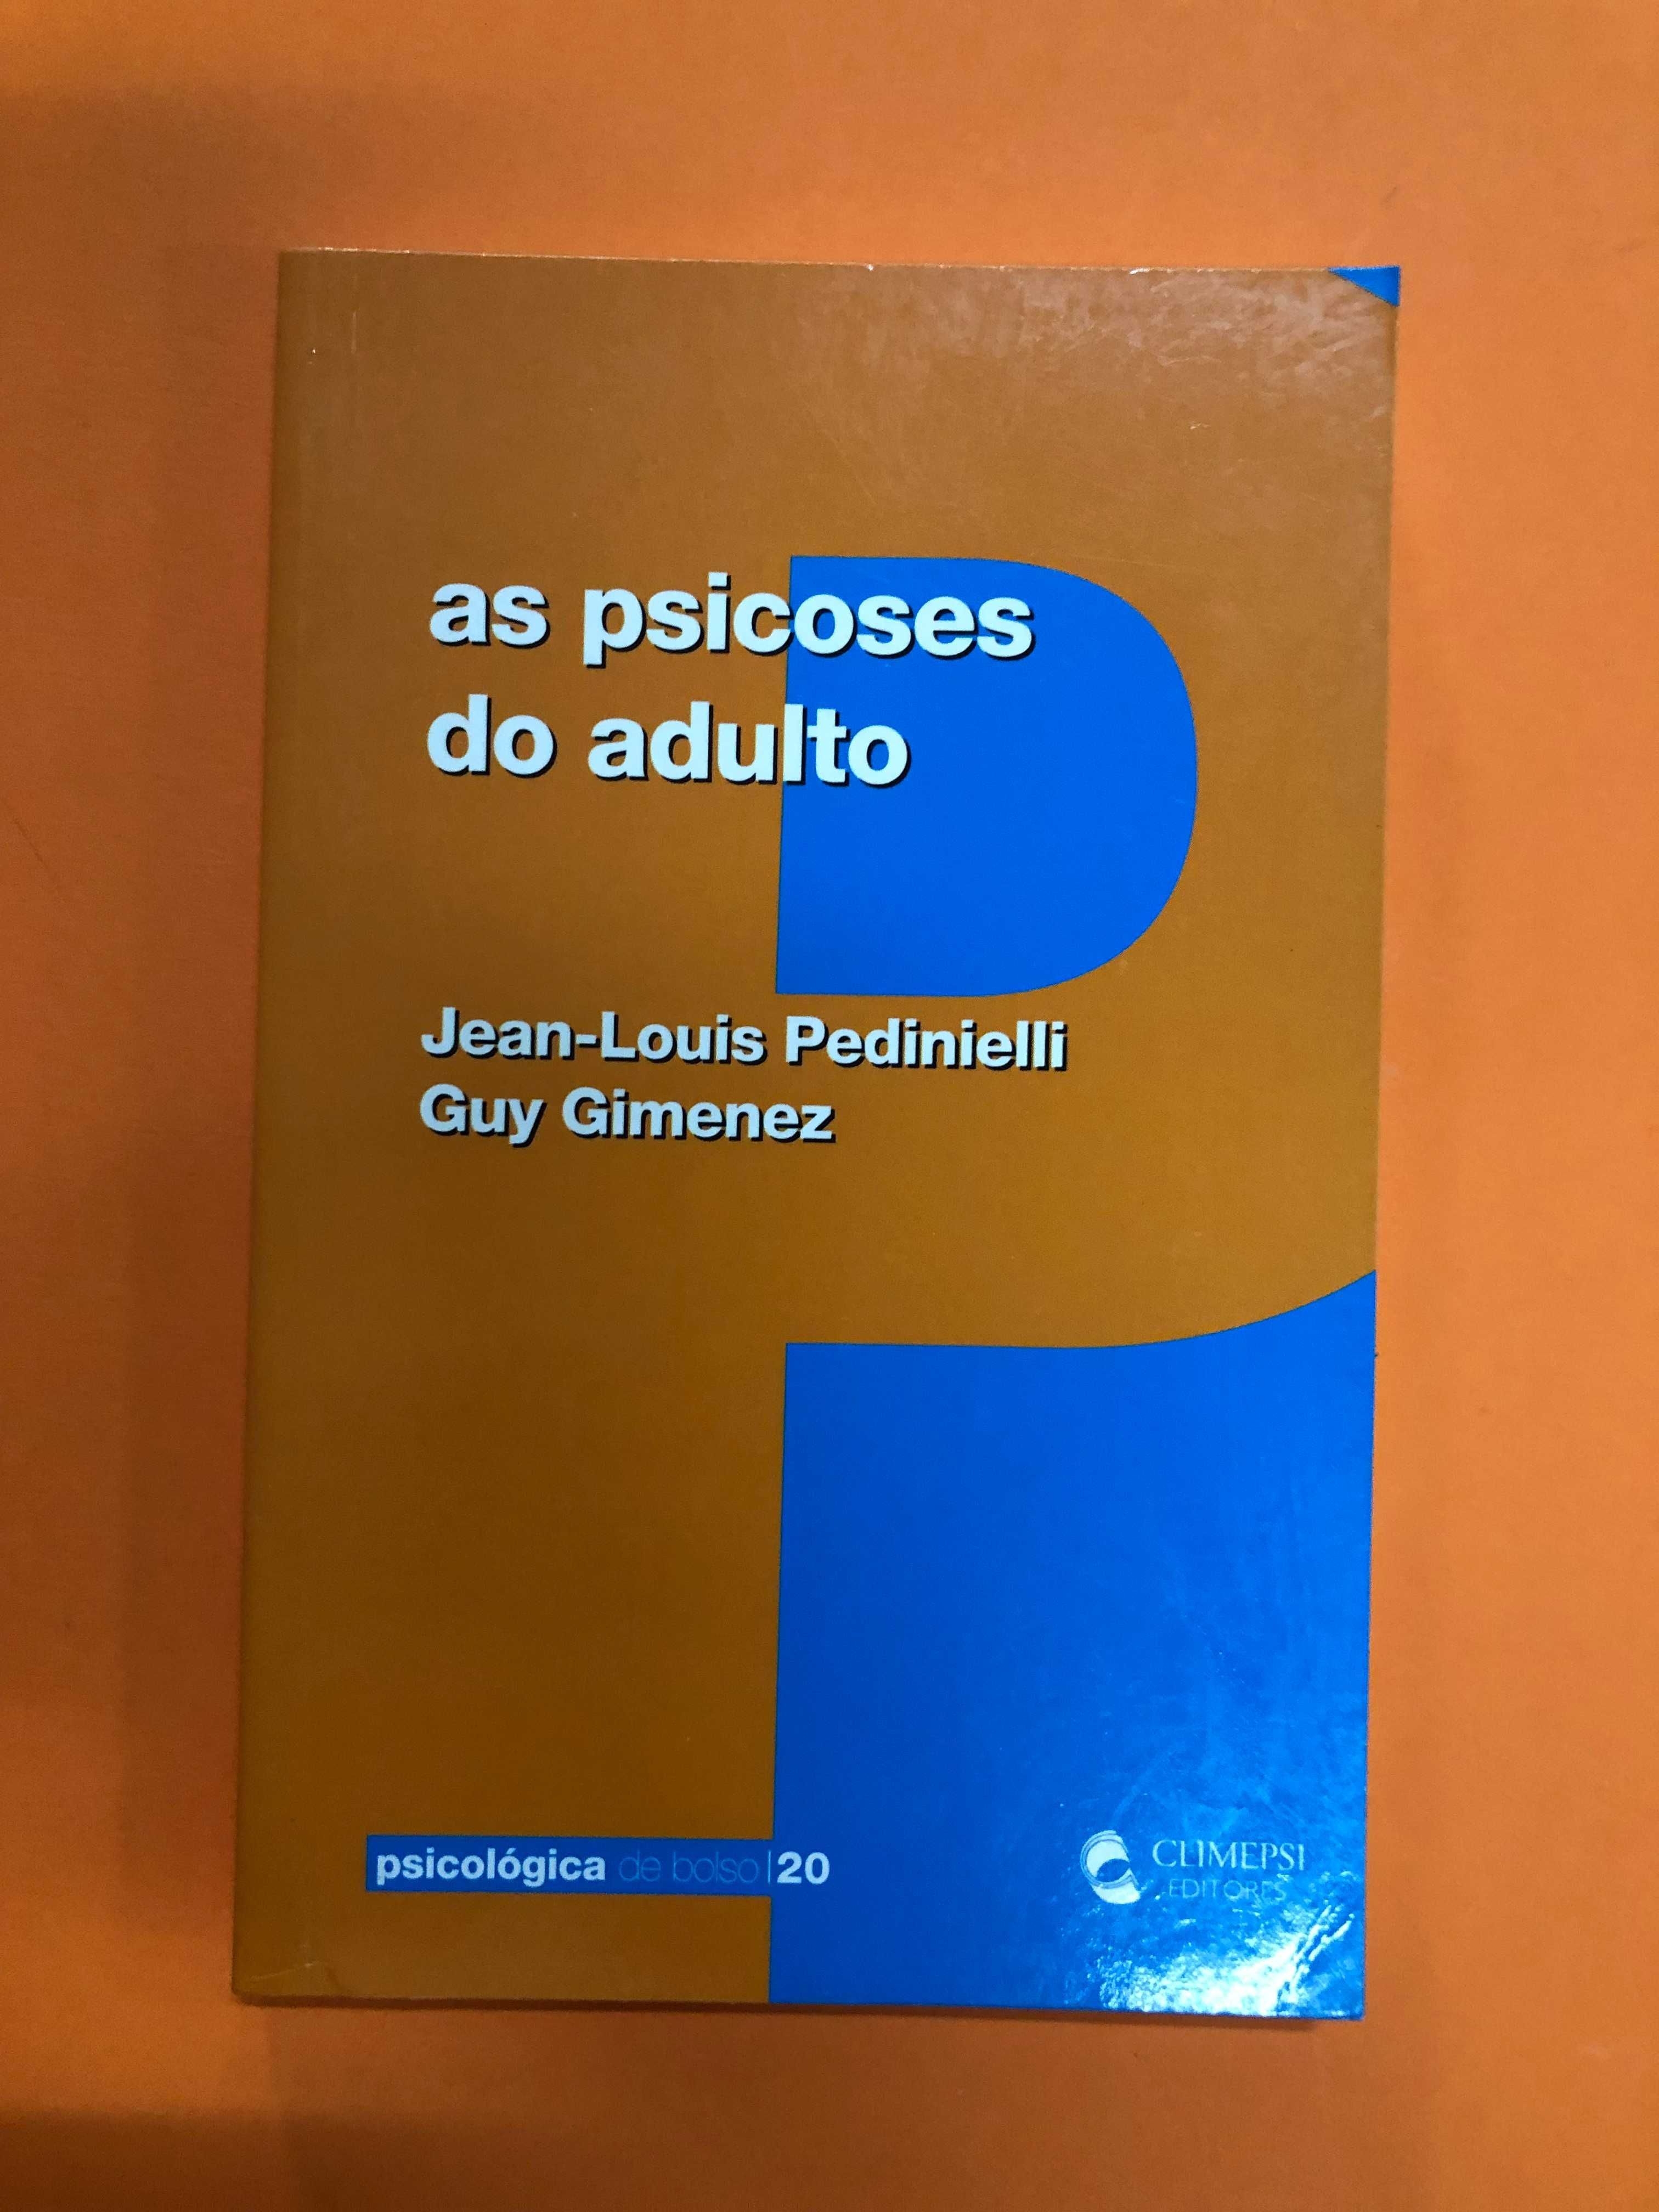 As psicoses do adulto - Jean-Louis Pedinielli